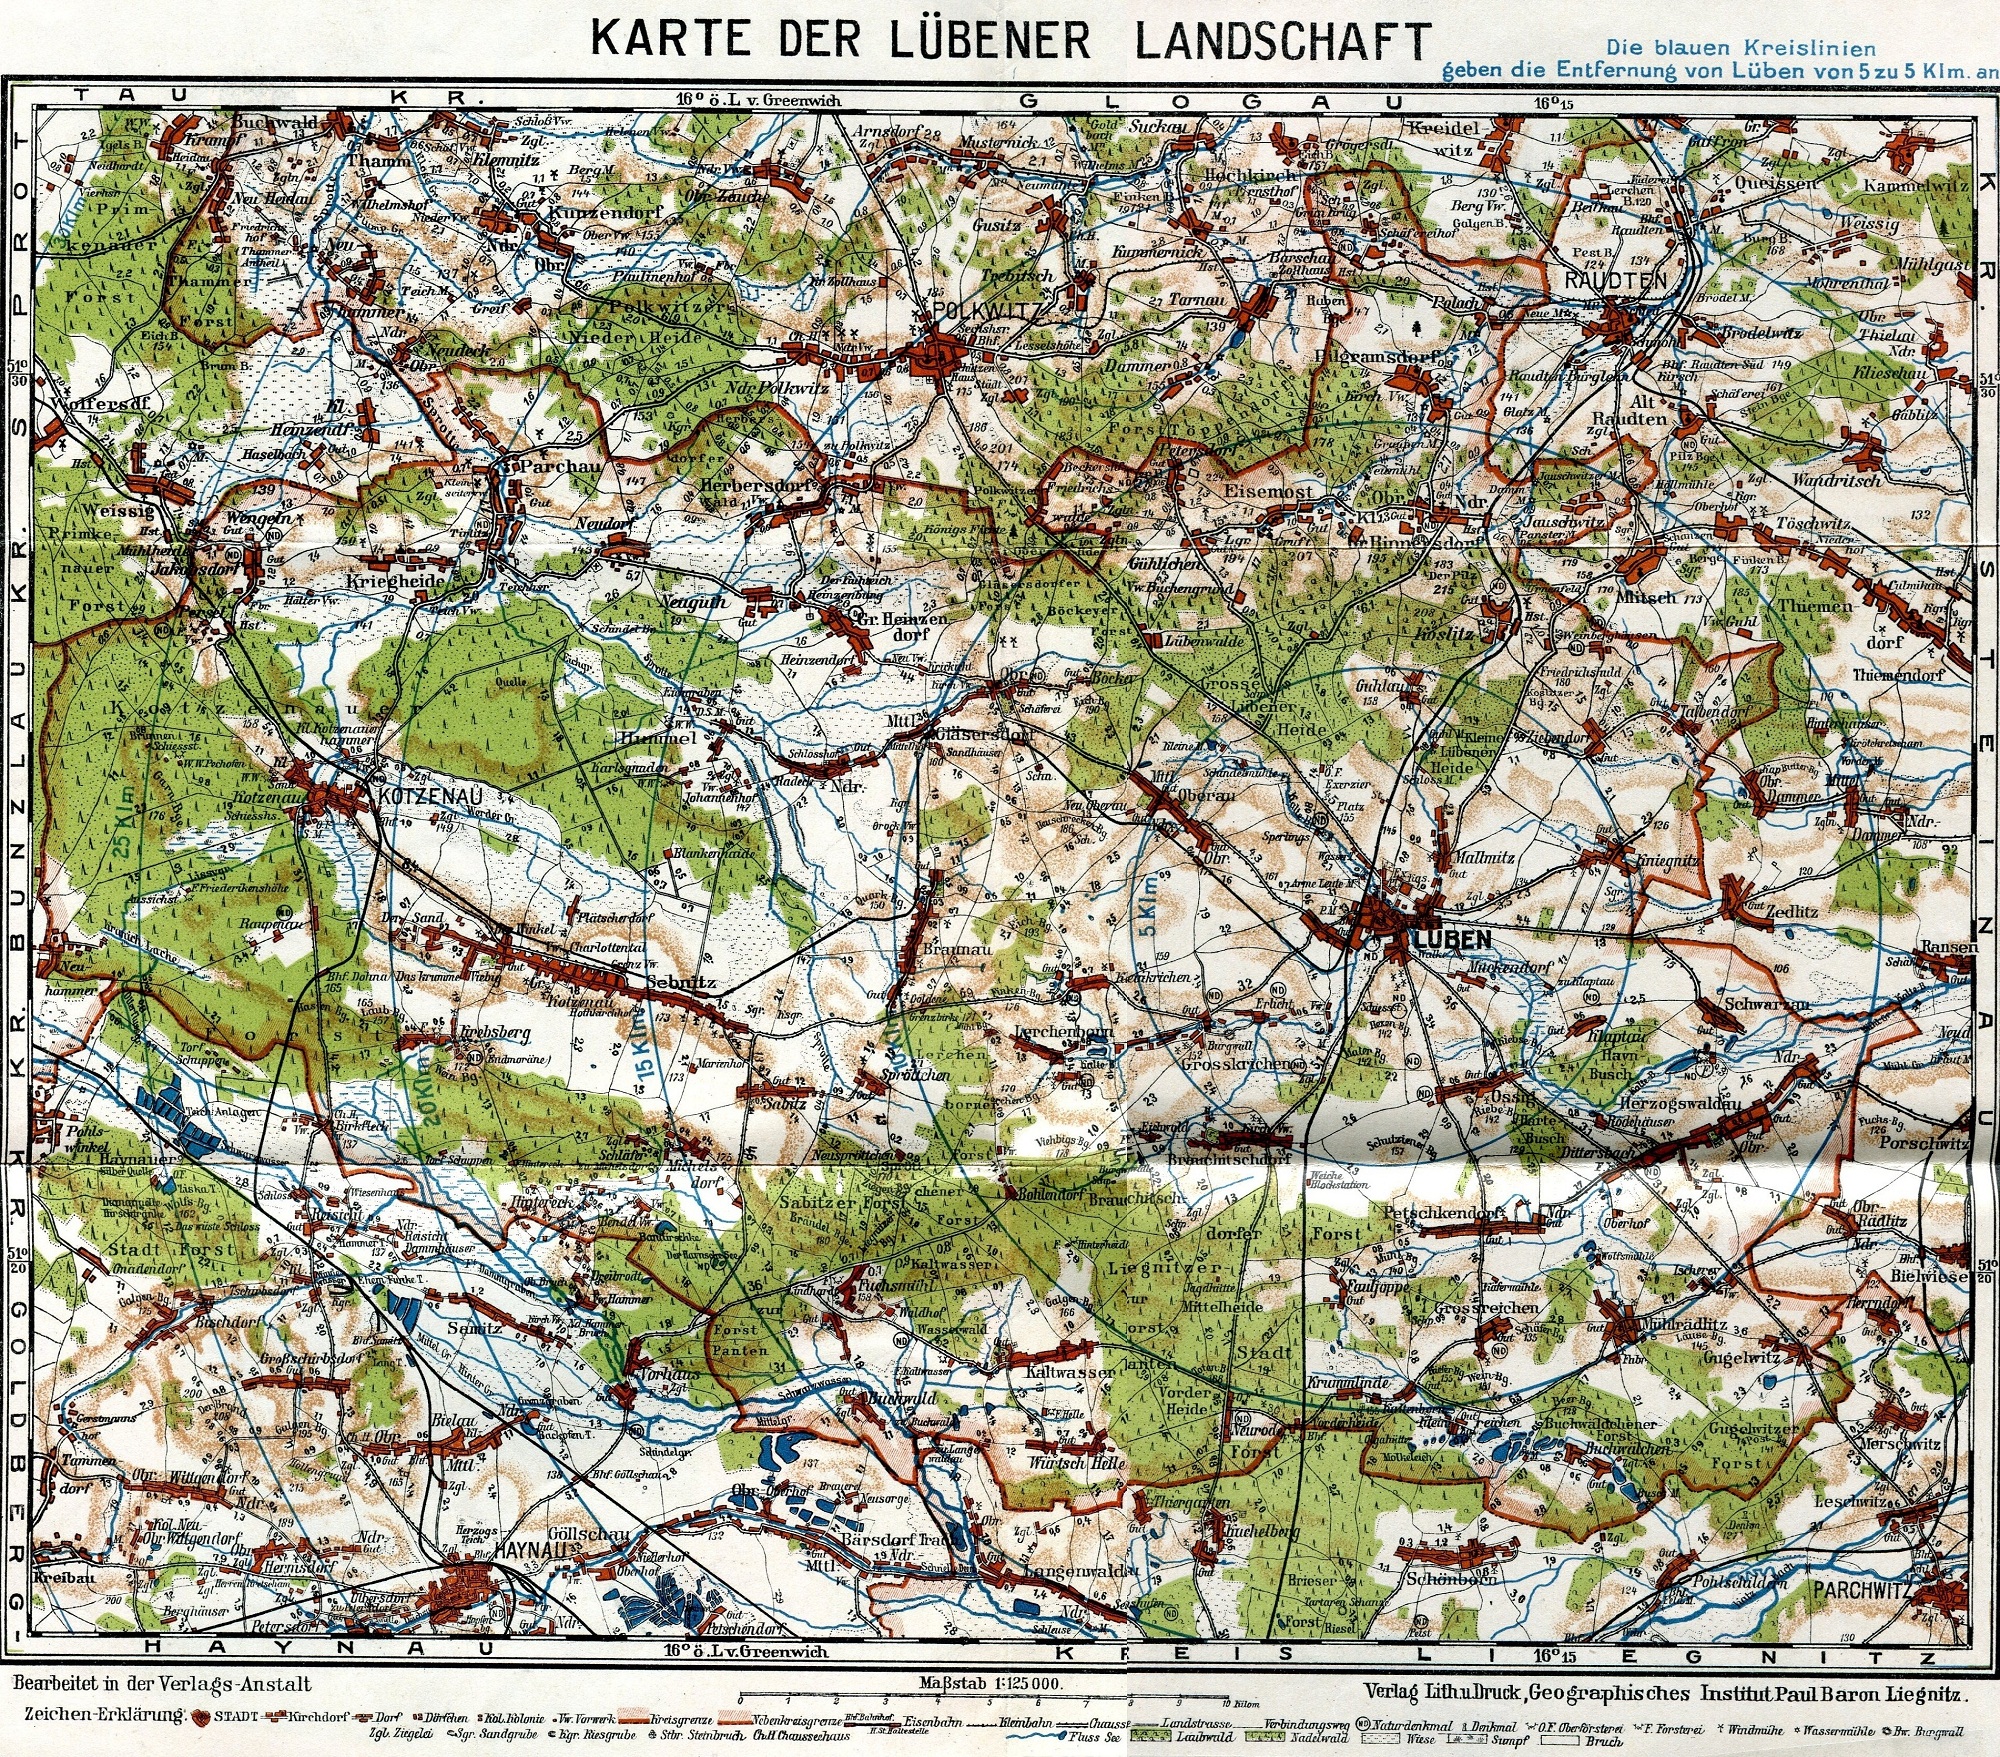 Beilage zum 'Führer durch die Lübener Landschaft' von der Ortsgruppe Lüben des Riesengebirgsvereins 1928/31